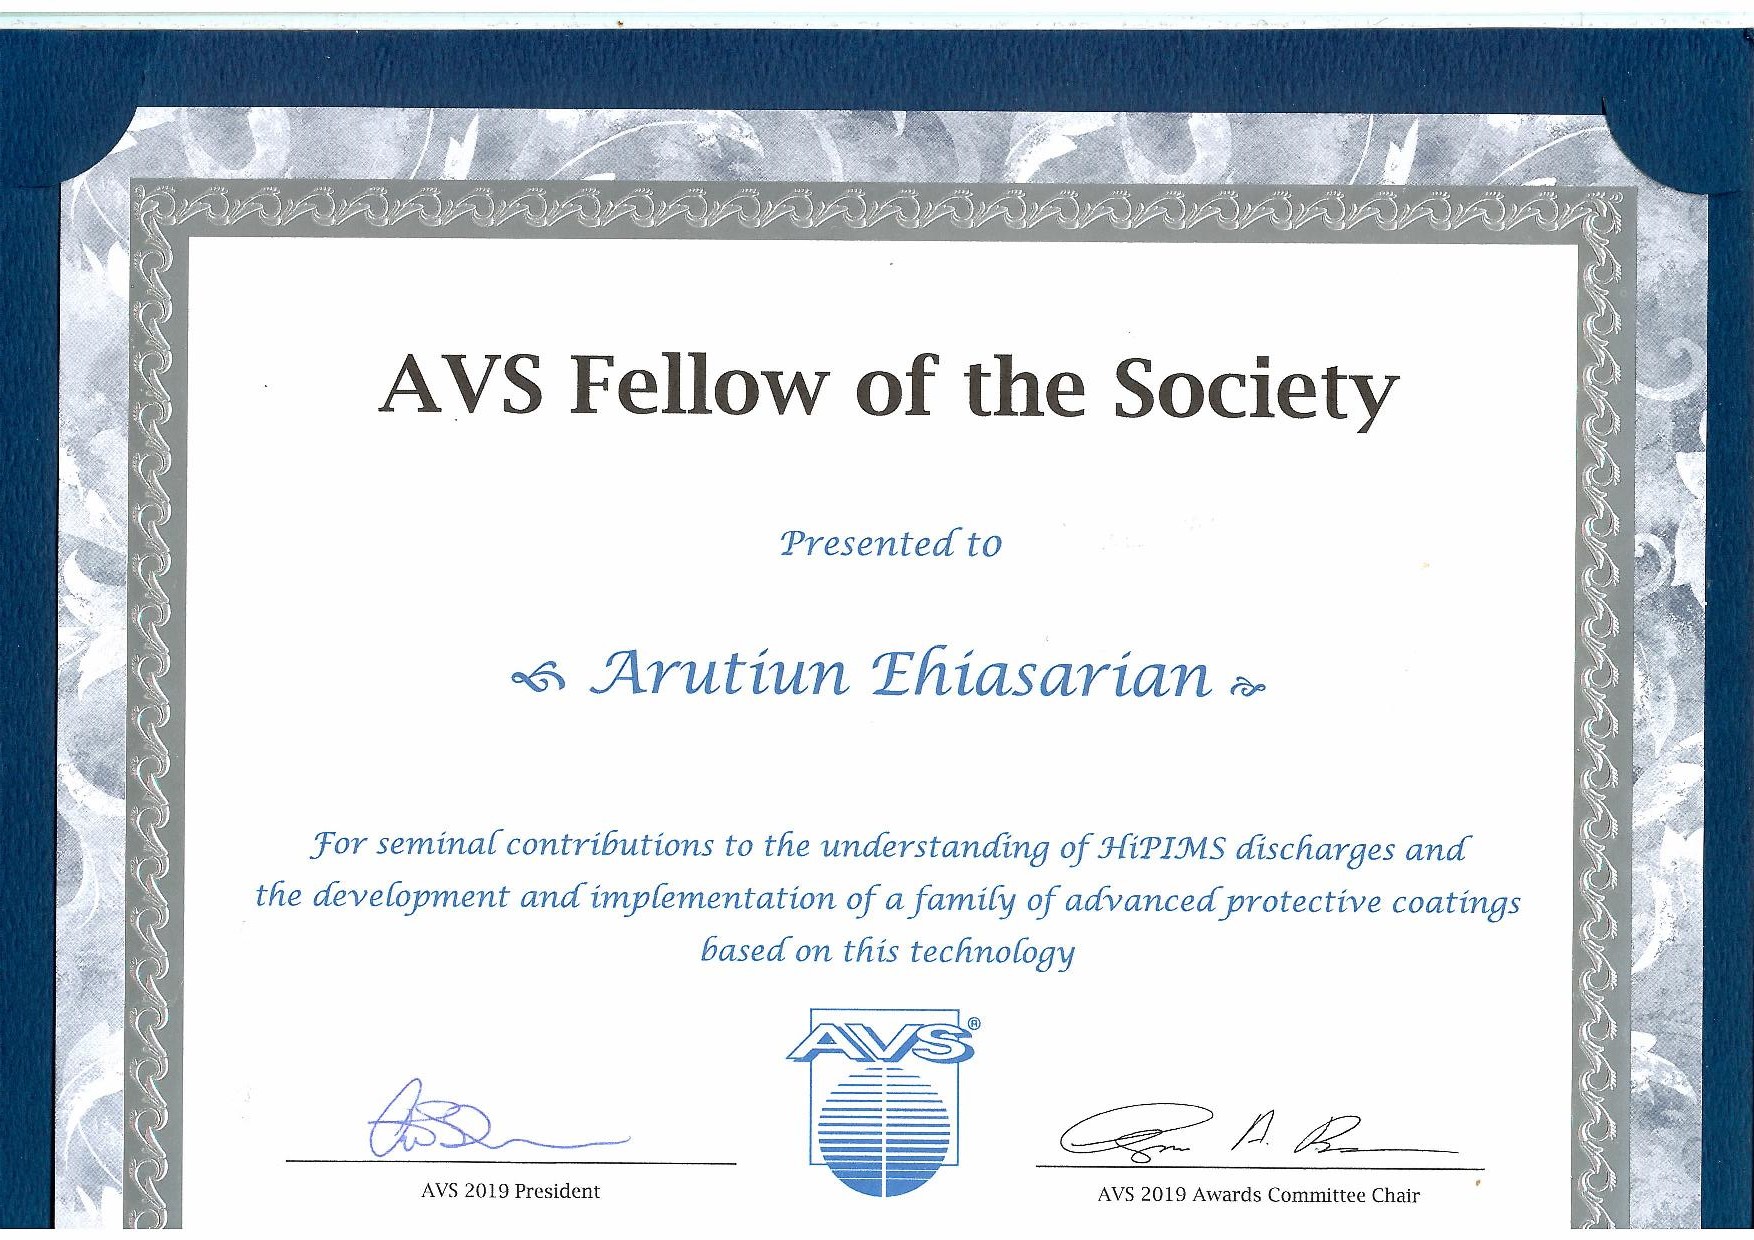 AVS Fellow of the Society Award